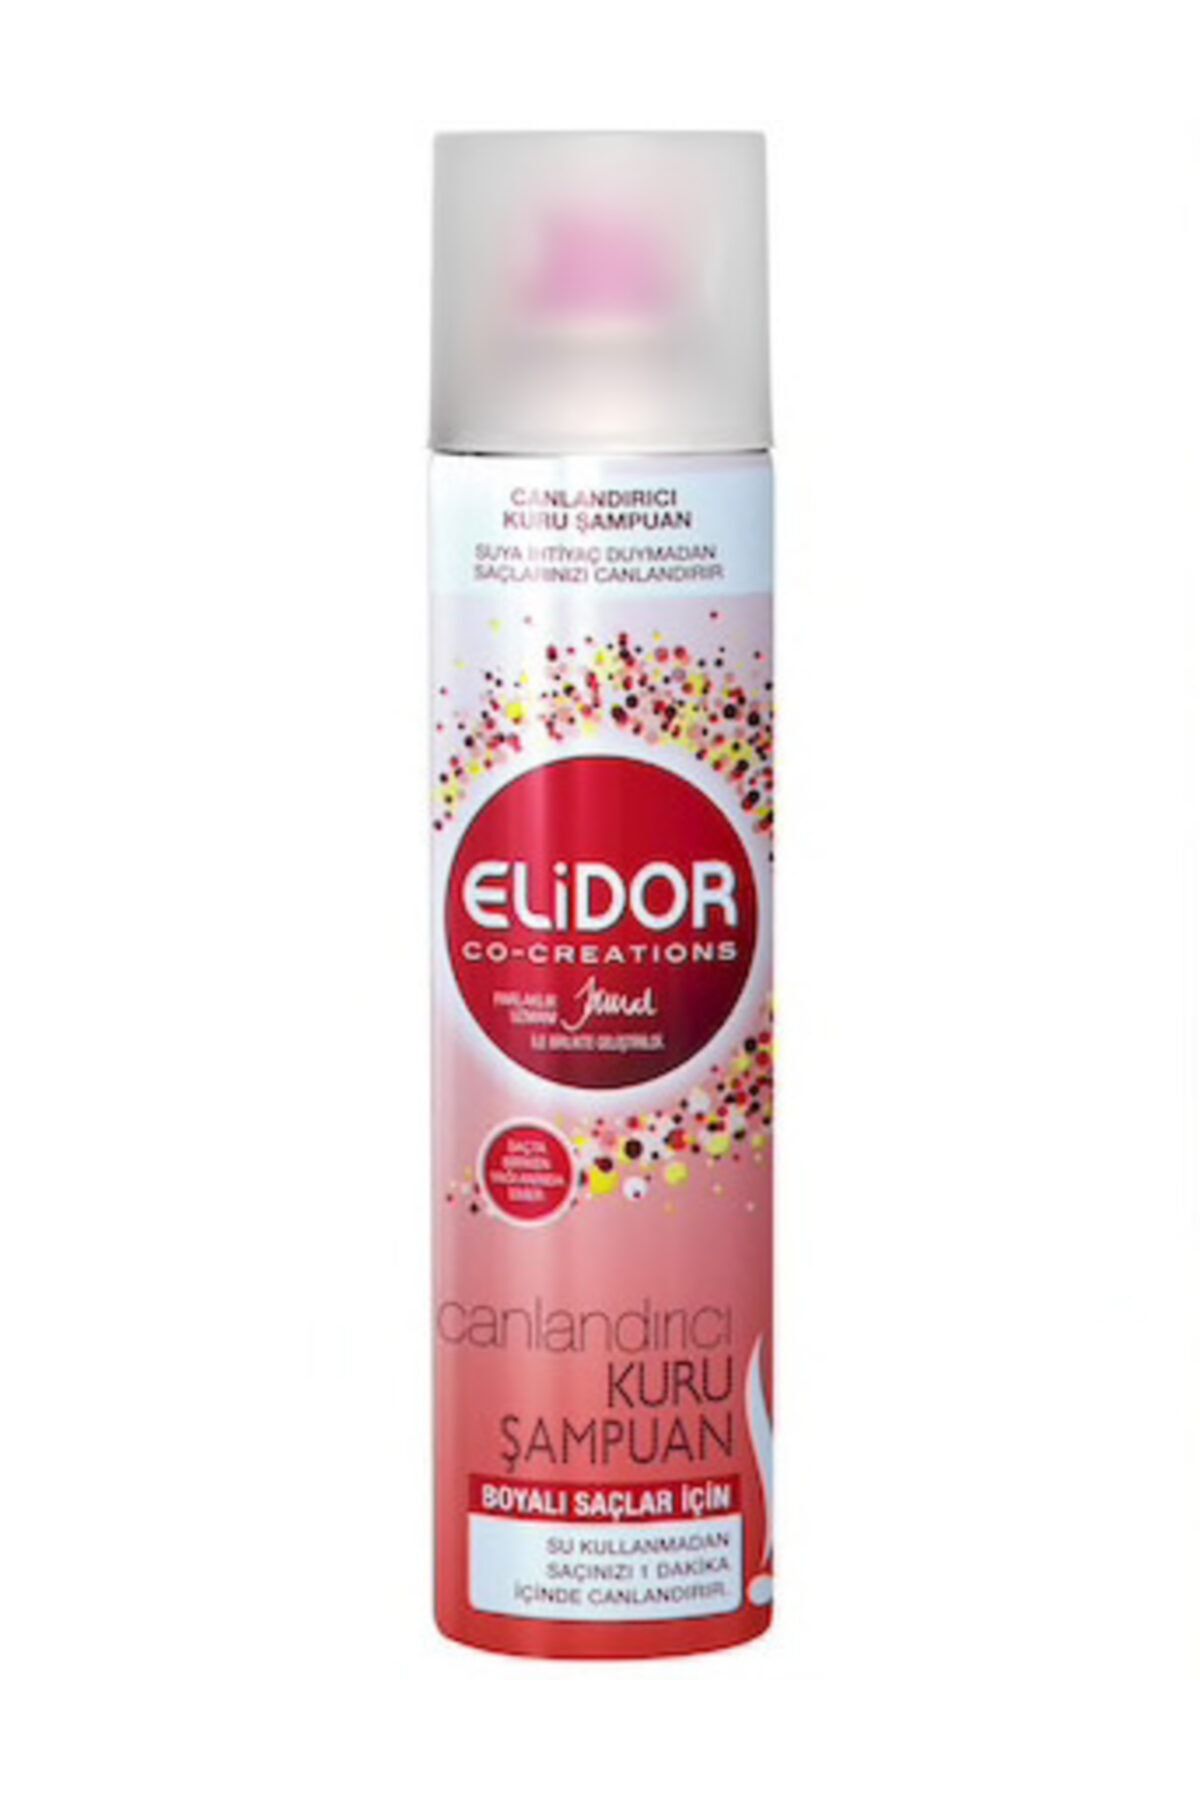 Elidor Kuru Şampuan Boyalı Saçlar Için 250 ml